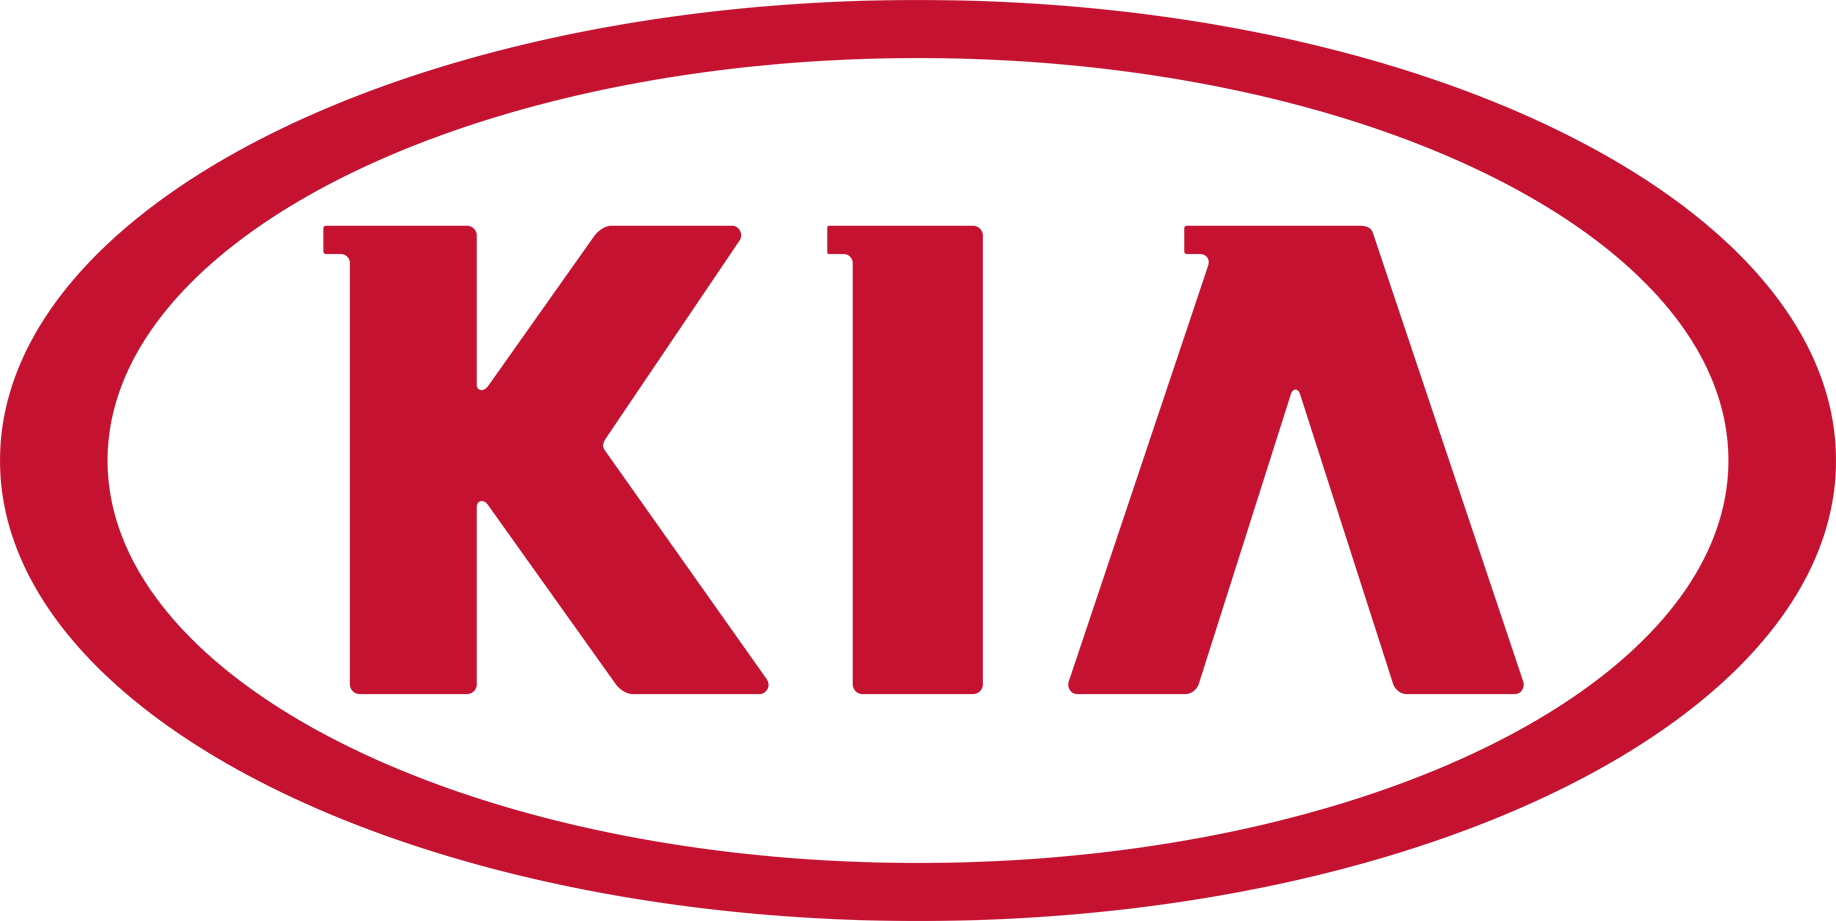 Kia logosu